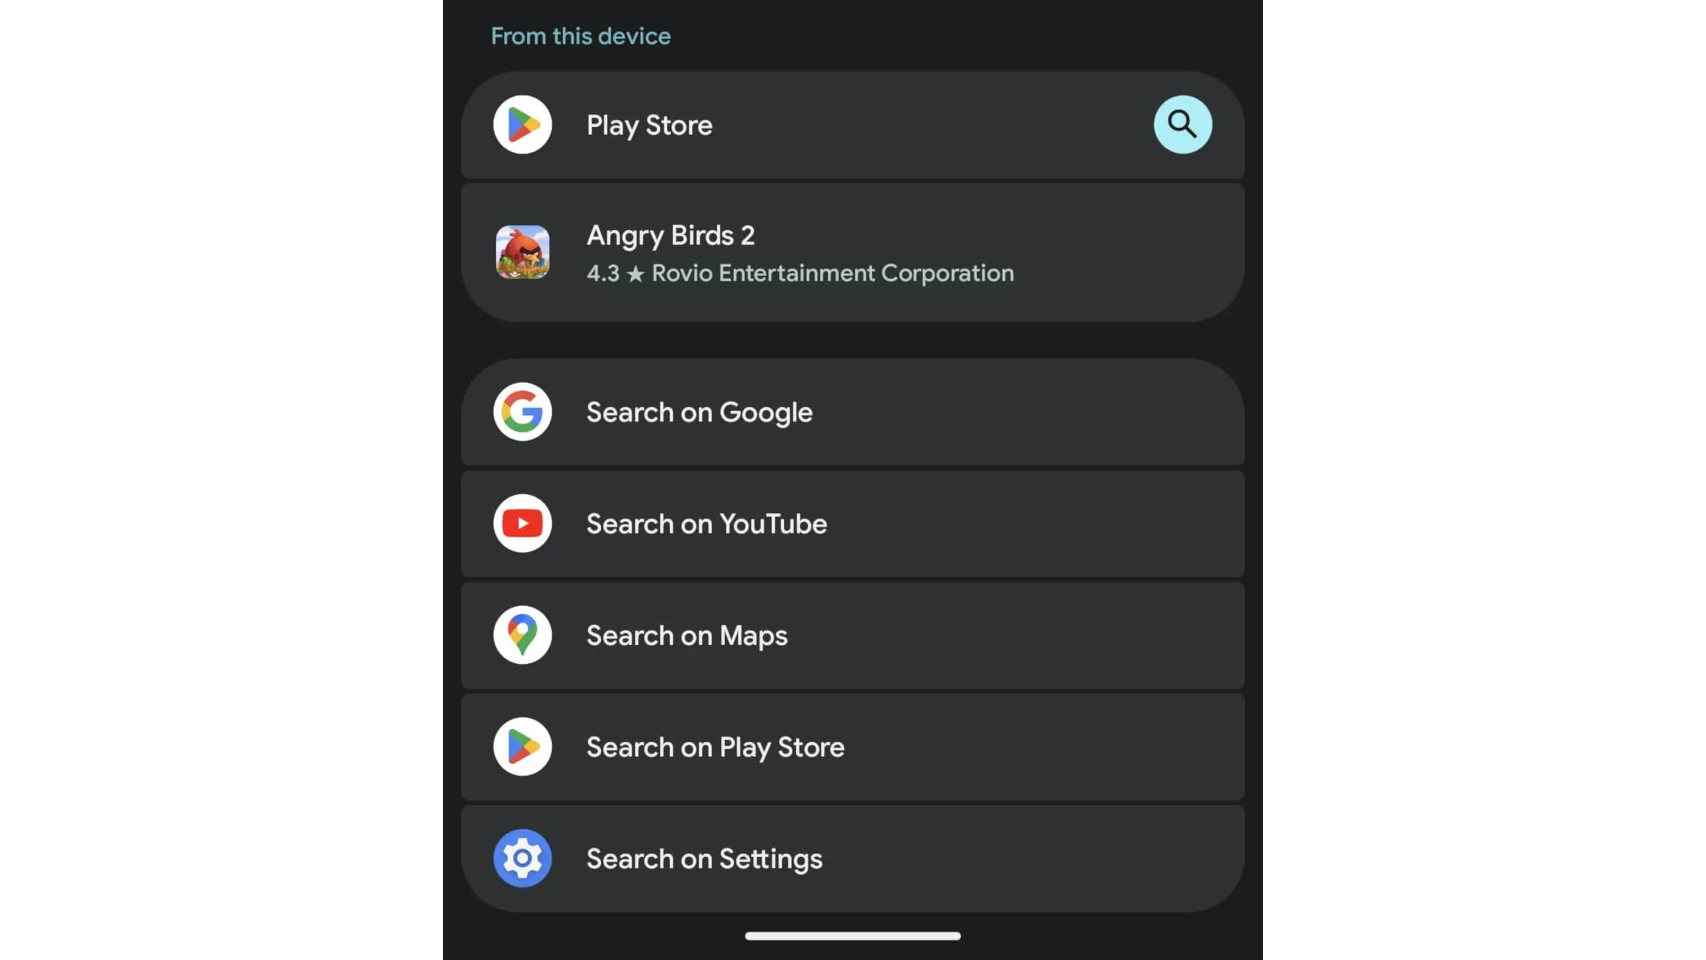 Resultados de Play Store y opciones para buscar en YouTube y Maps